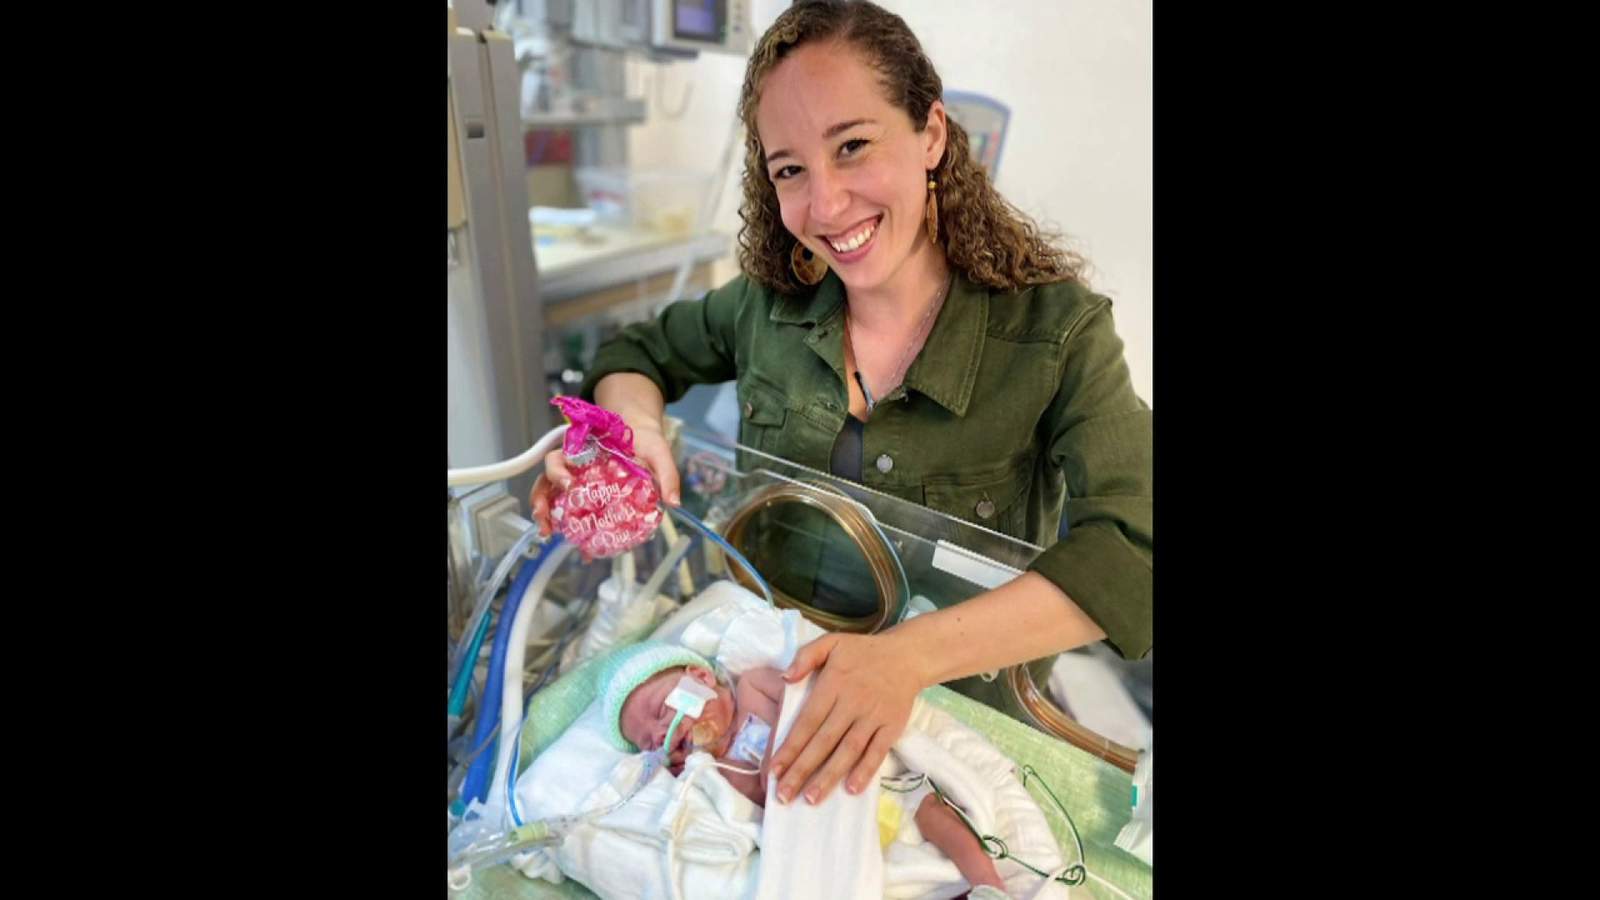 Premature birth in the midst of pandemic strands Boston couple in Miami